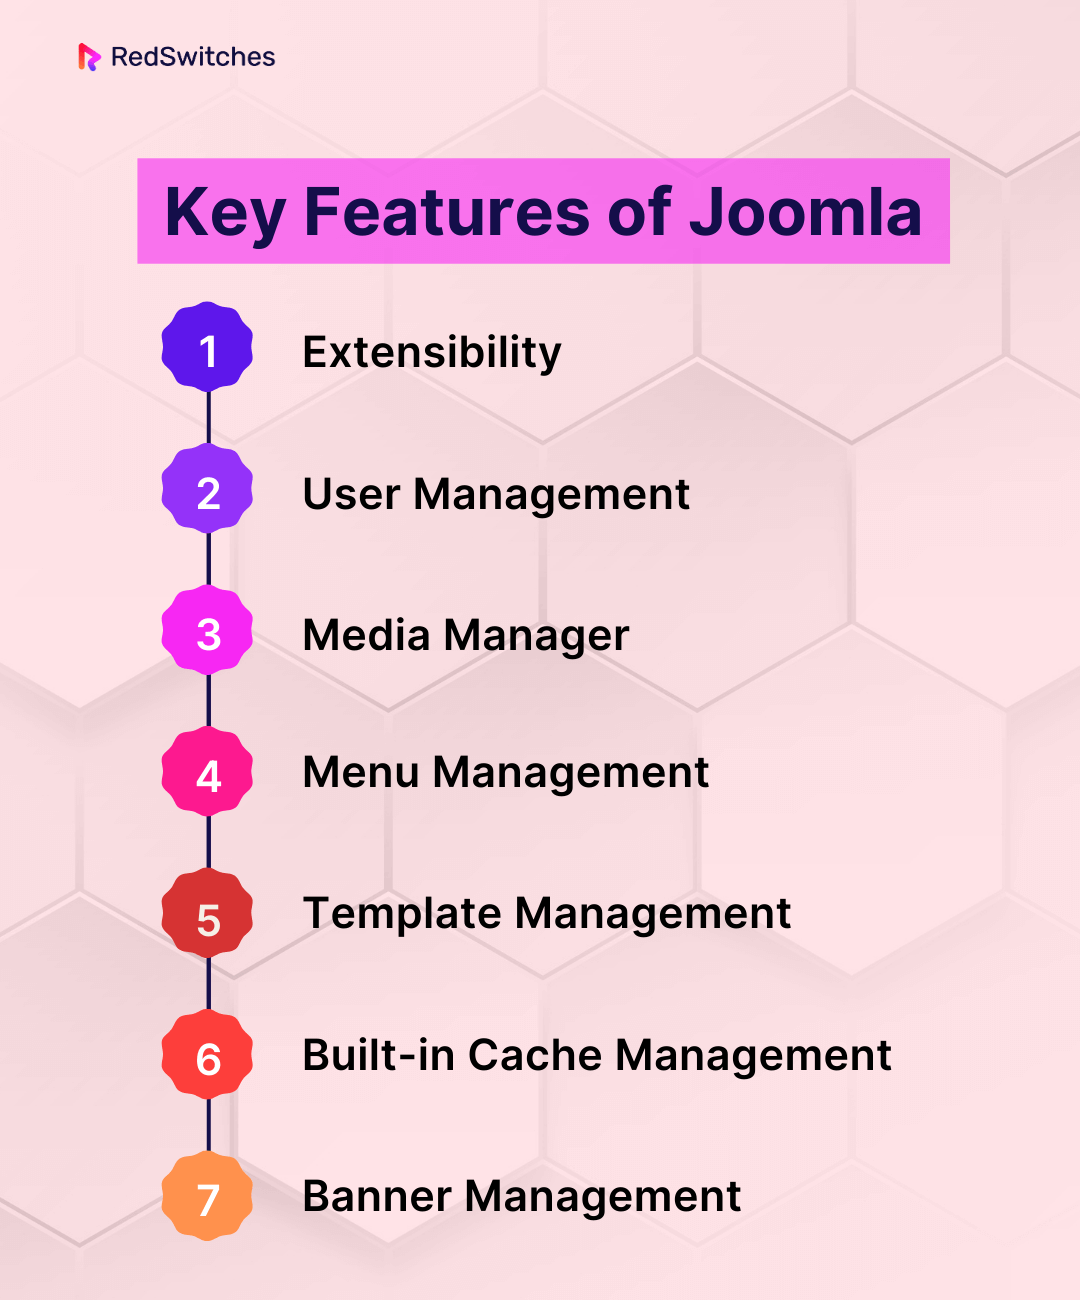 Key Features of Joomla